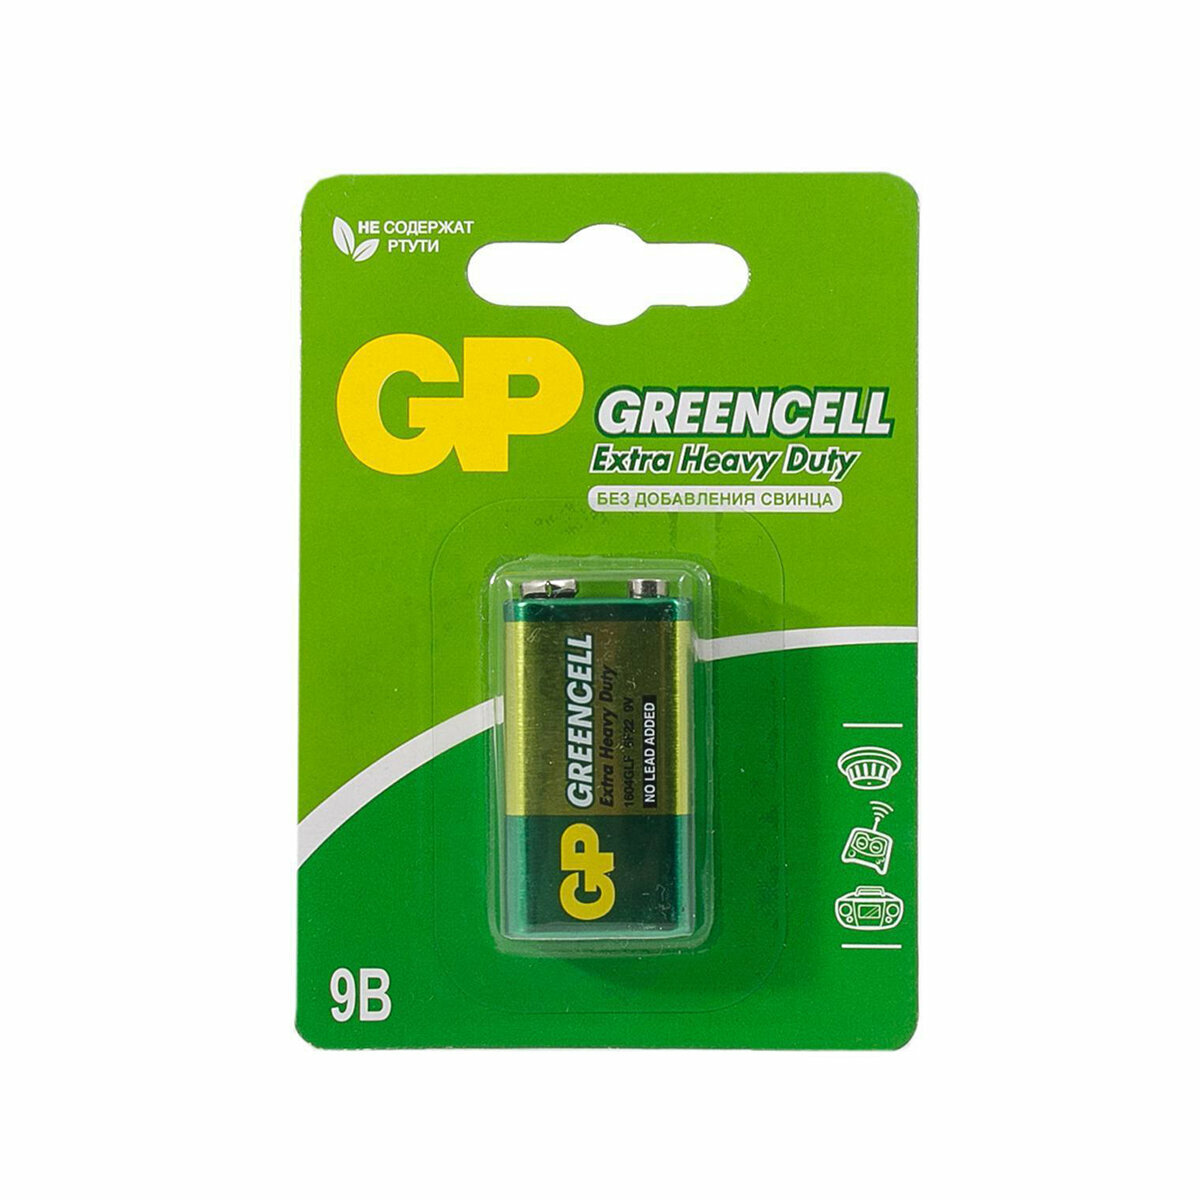 Батарейка GP Greencell 1604GLF-2CR1, типоразмер Крона, 1 шт